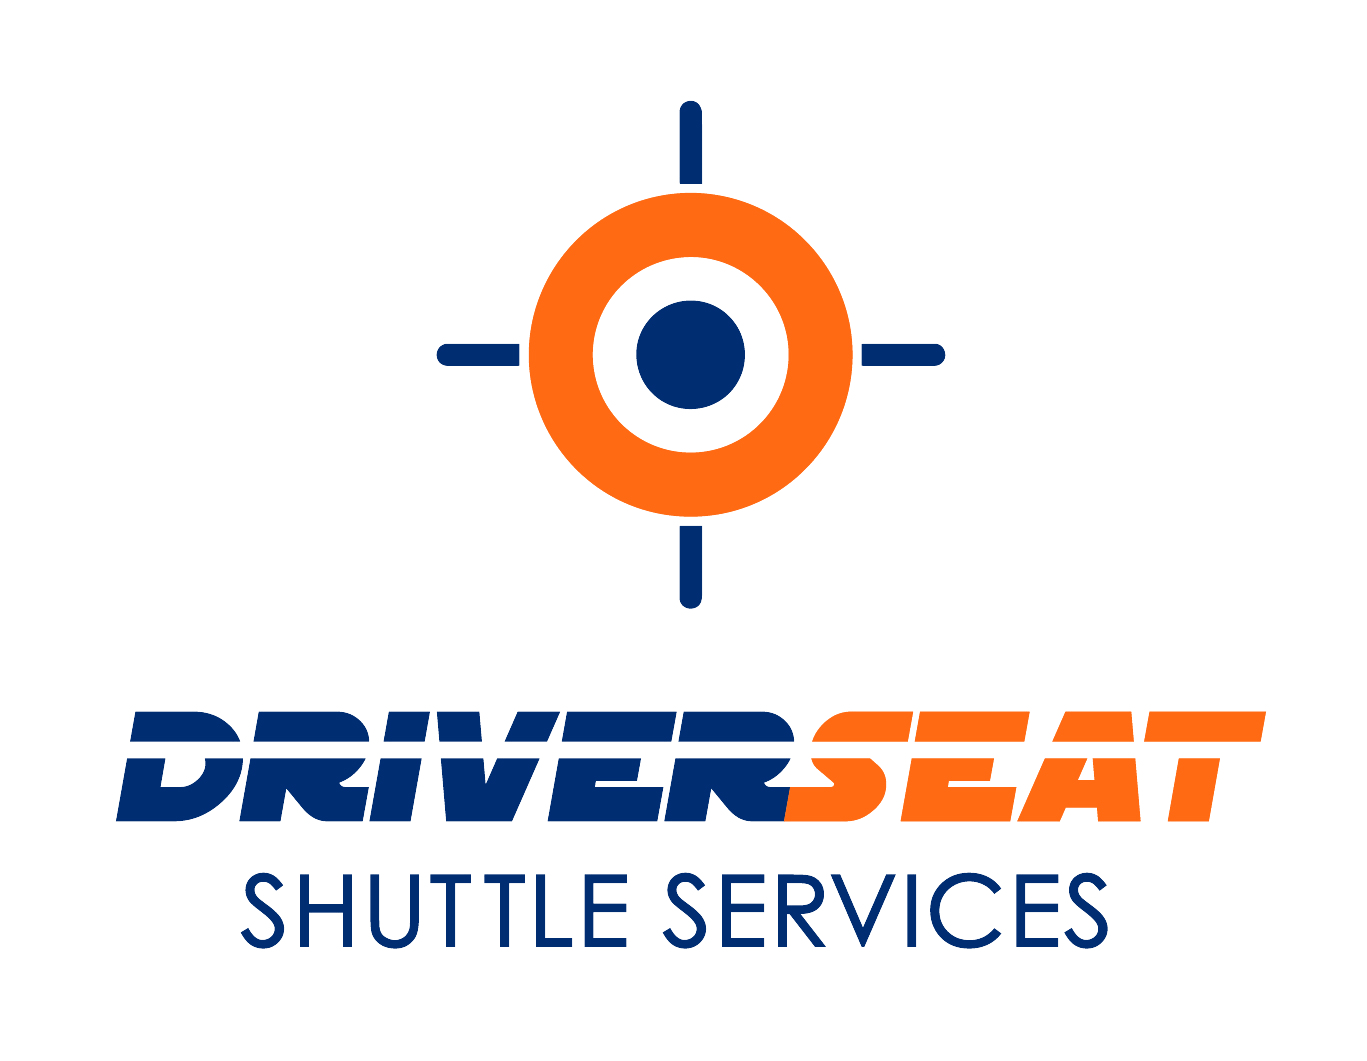 Driverseat logo